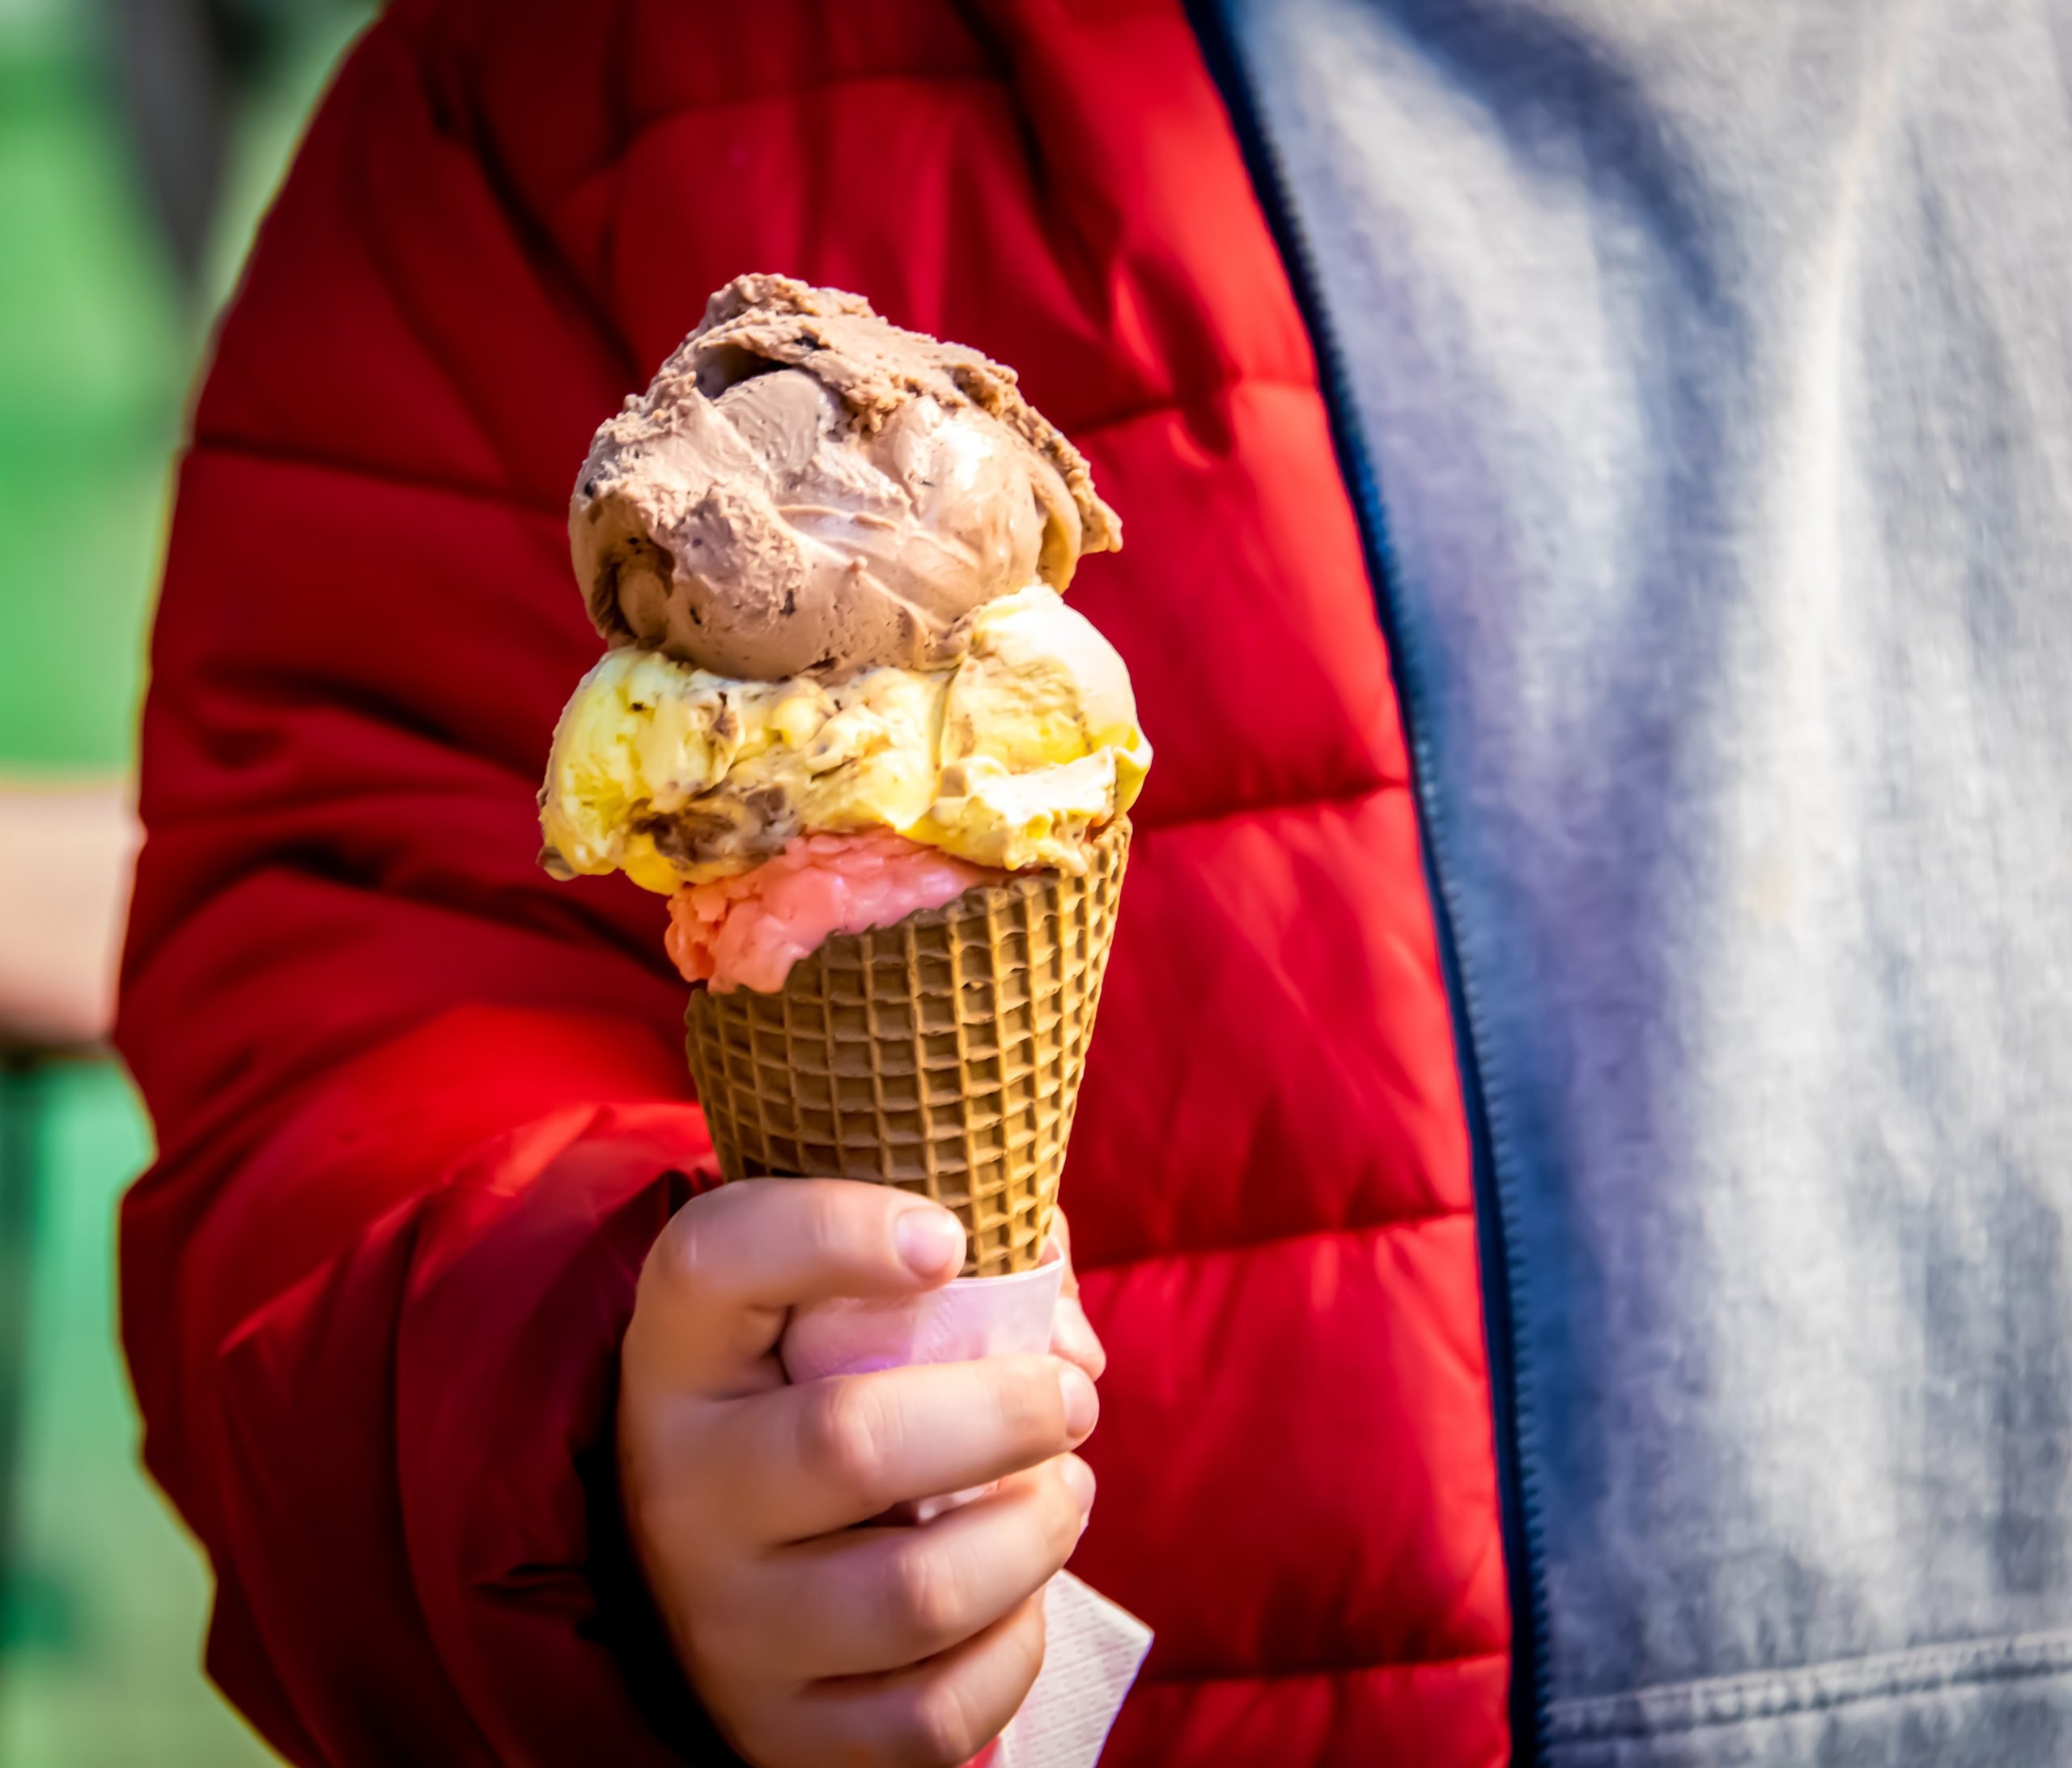 Quali sono i migliori gelati in commercio secondo l’analisi di Altroconsumo